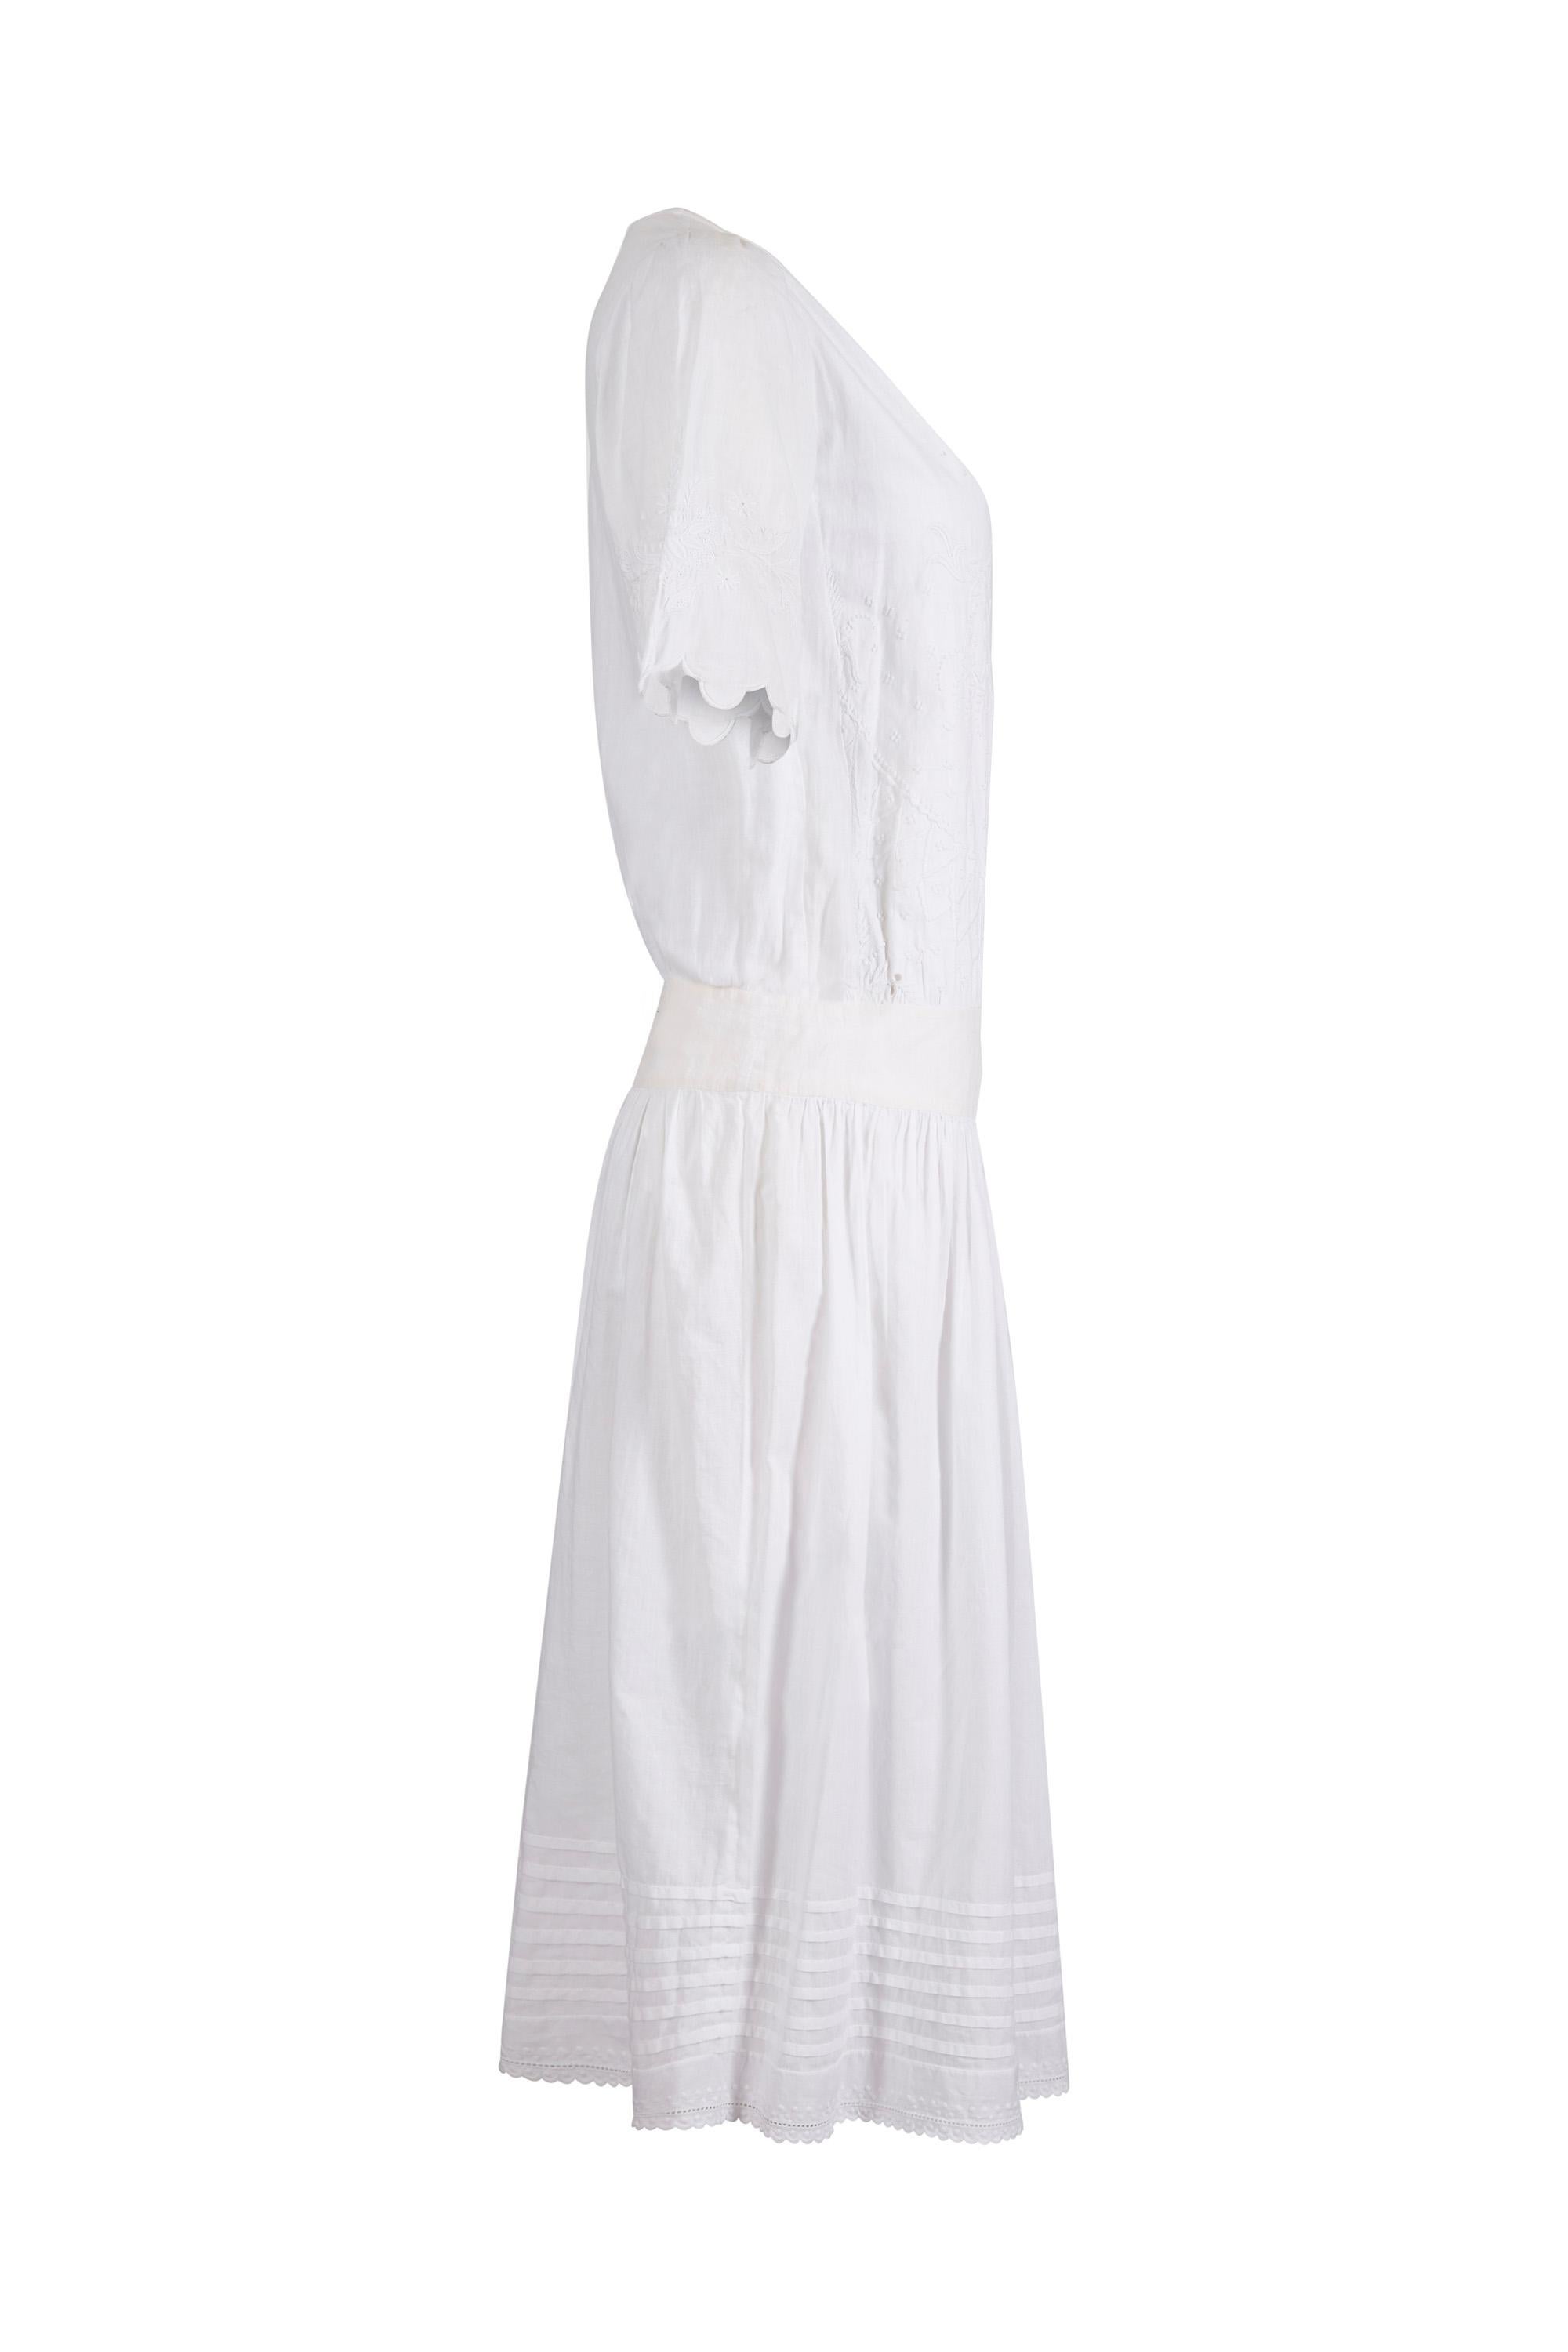 Cette exquise robe de thé antique des années 1920 en coton brodé à la main est dans un état vintage absolument étonnant pour une pièce de cette époque, sans aucun défaut à mentionner et ferait un choix enchanteur de vêtements de mariée alternatifs.